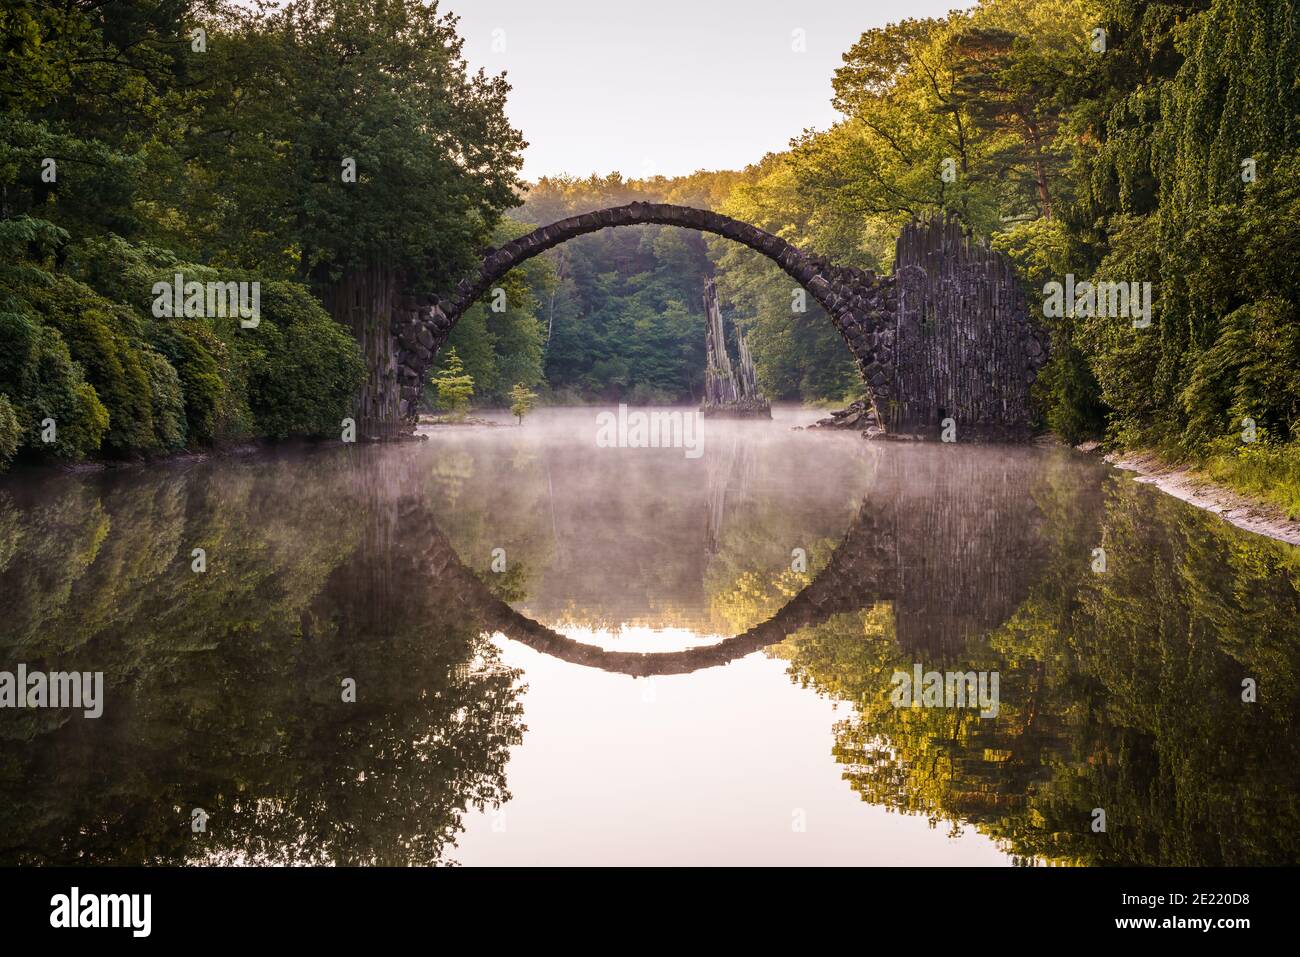 Загадочный парк. Мост Ракотцбрюке Германия. Чертов мост Ракотцбрюке, Германия. Парк Кромлау в Германии. Дьявольский мост Германия.